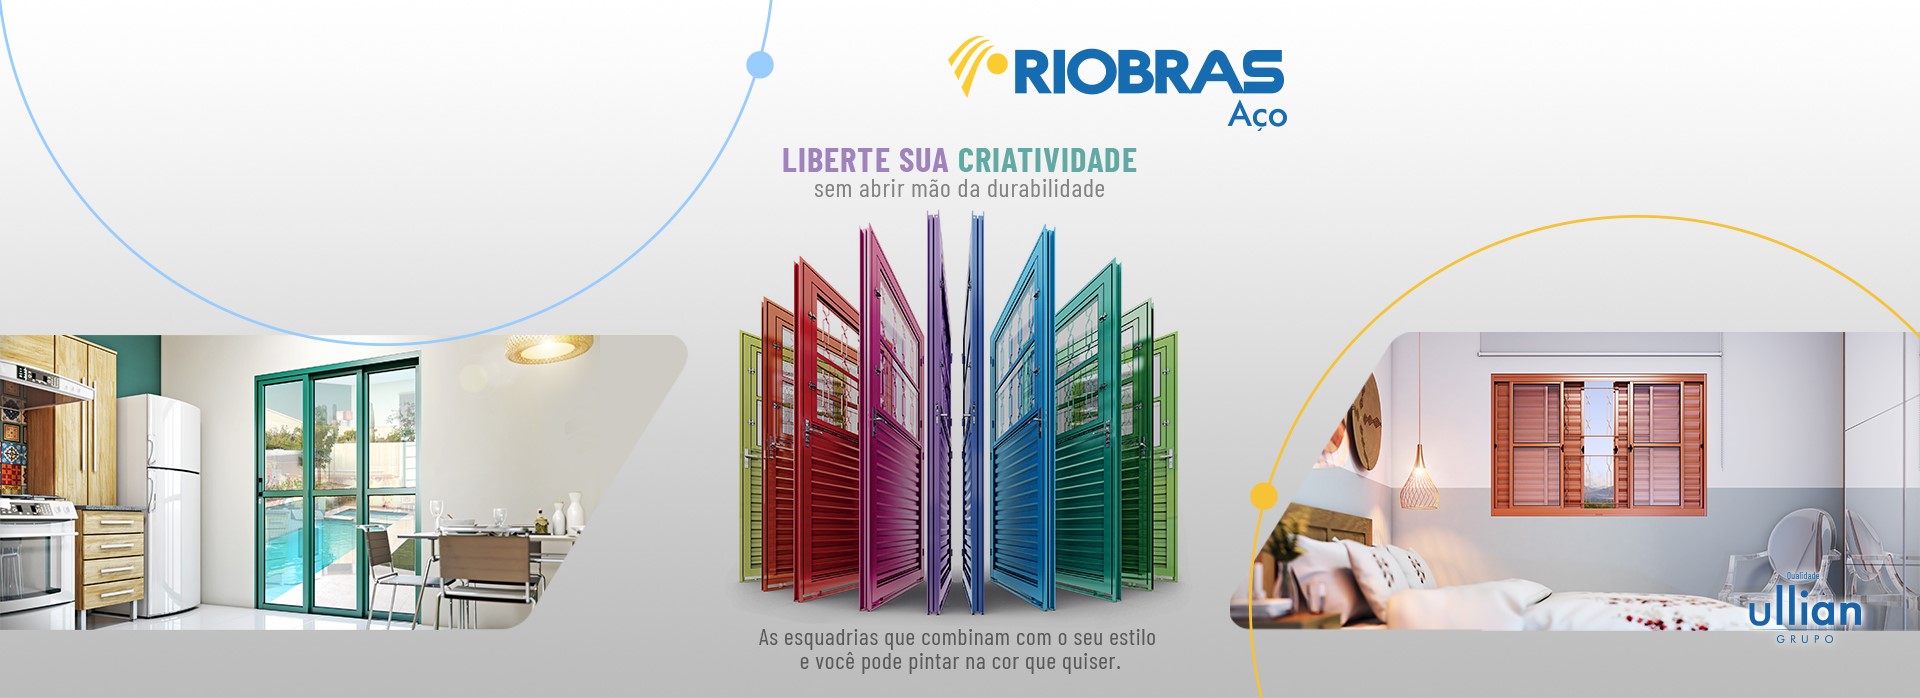 Portas em alumínio semi prontos para libertar sua criatividade da marca Riobras